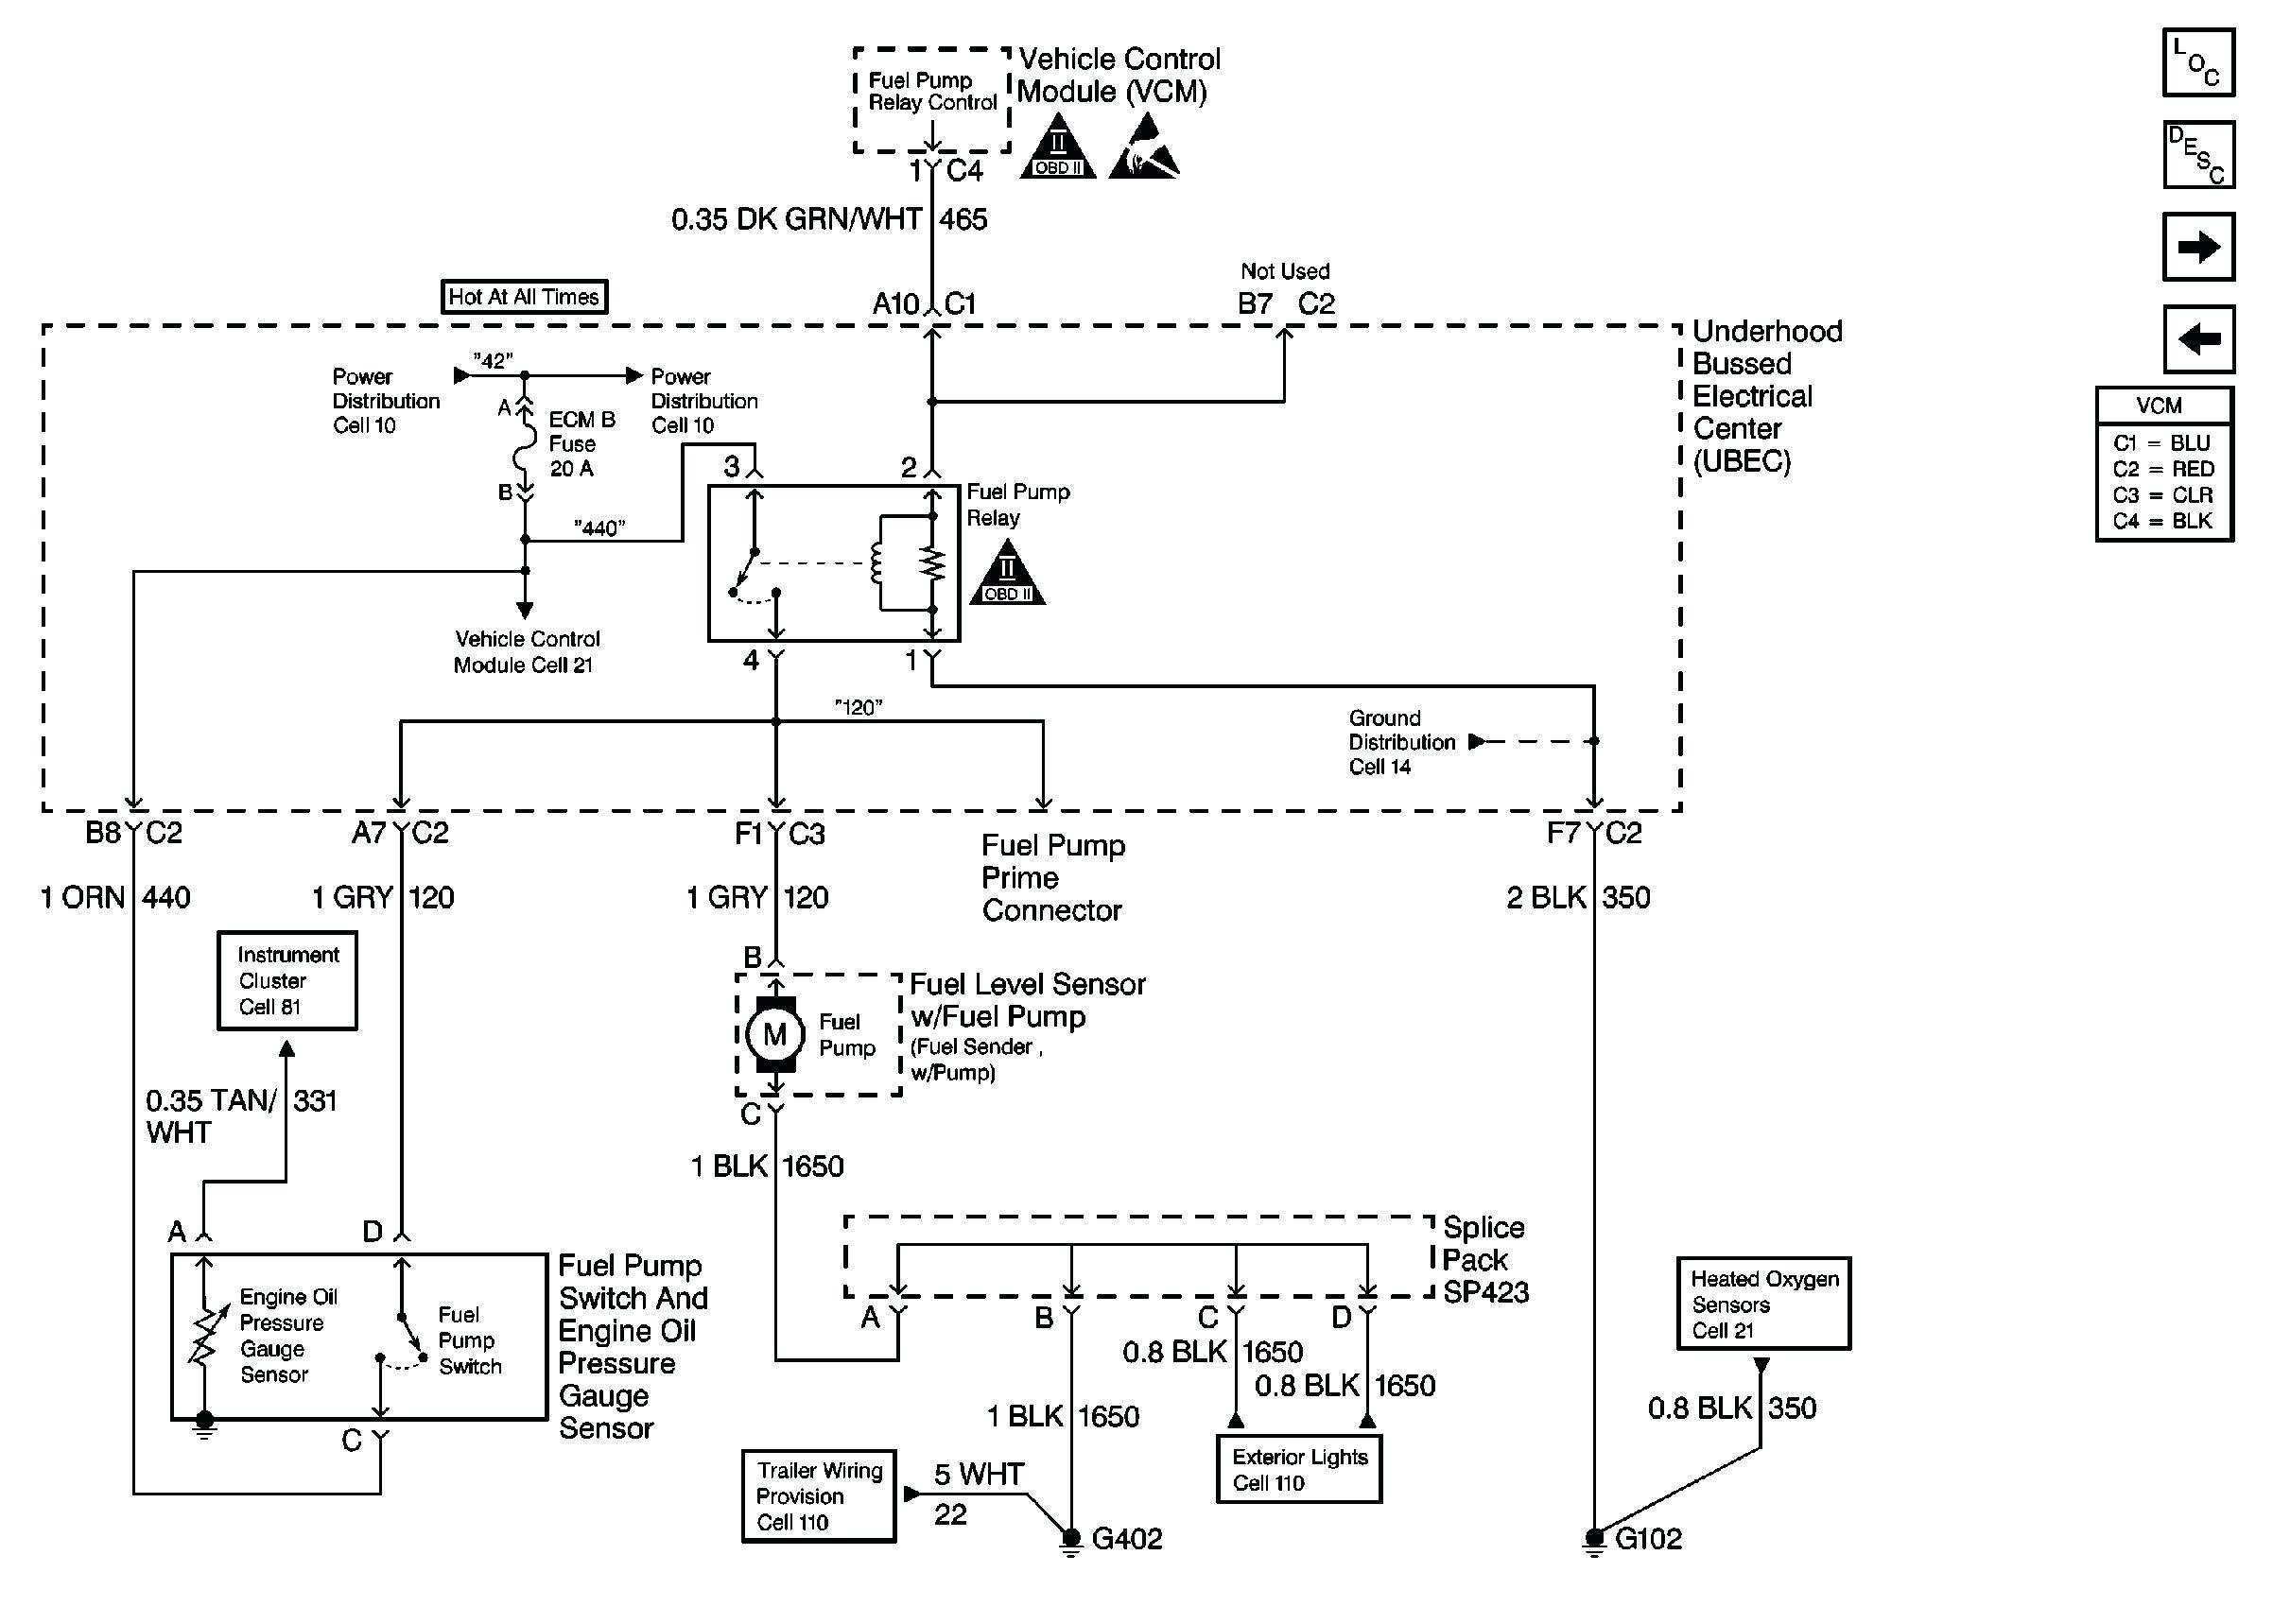 Chevy S10 Wiring Diagram 1991 S10 Wiring Diagram Wiring Diagram Paper Of Chevy S10 Wiring Diagram